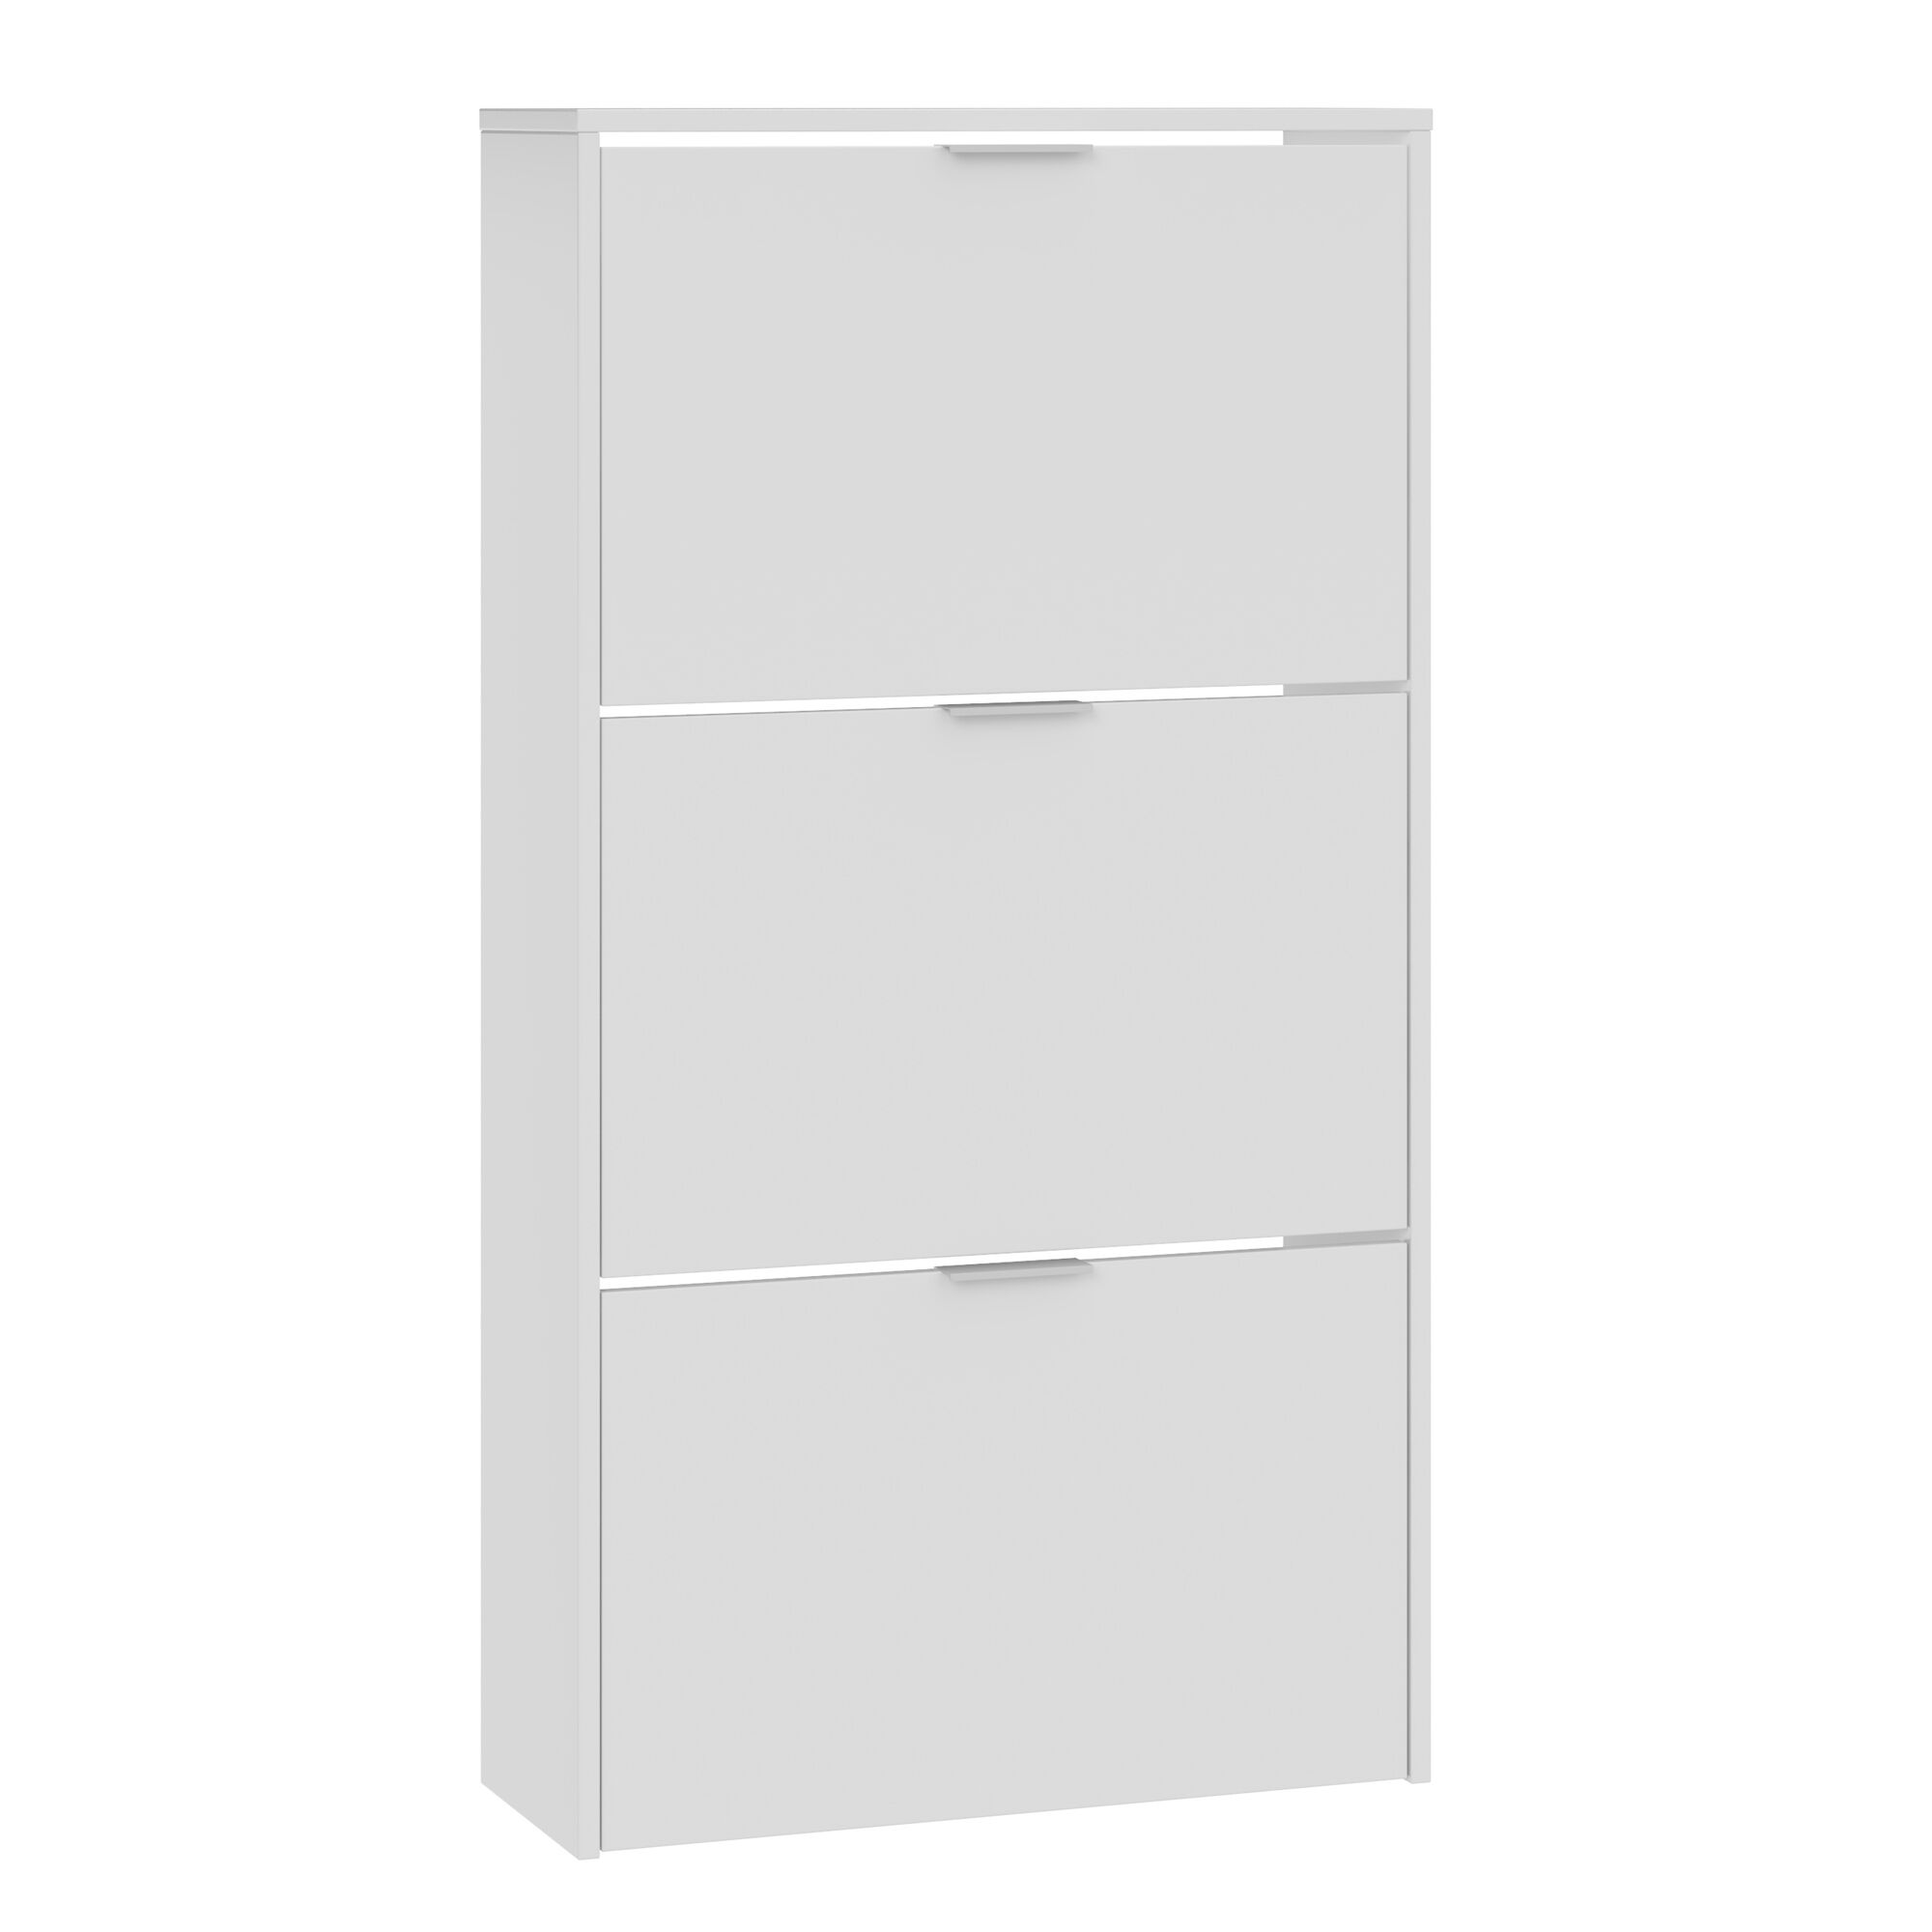 HOMN Mueble zapatero 3 puertas color blanco brillo, 60 cm x 22 cm x 113 cm